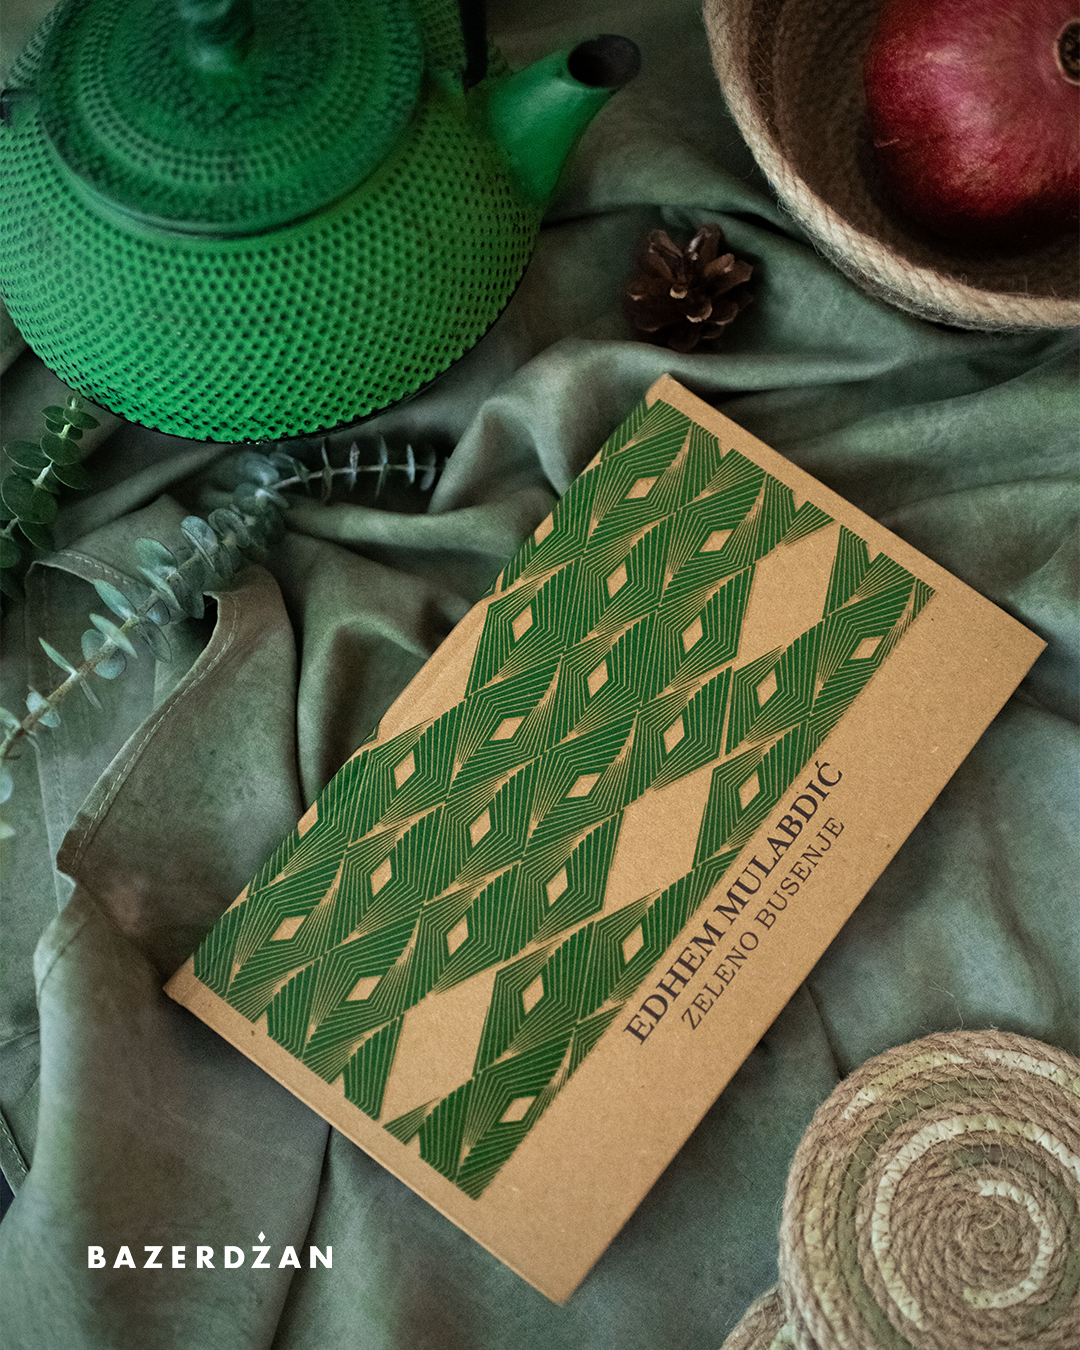 Knjiga "Zeleno busenje" Edhem Mulabdić